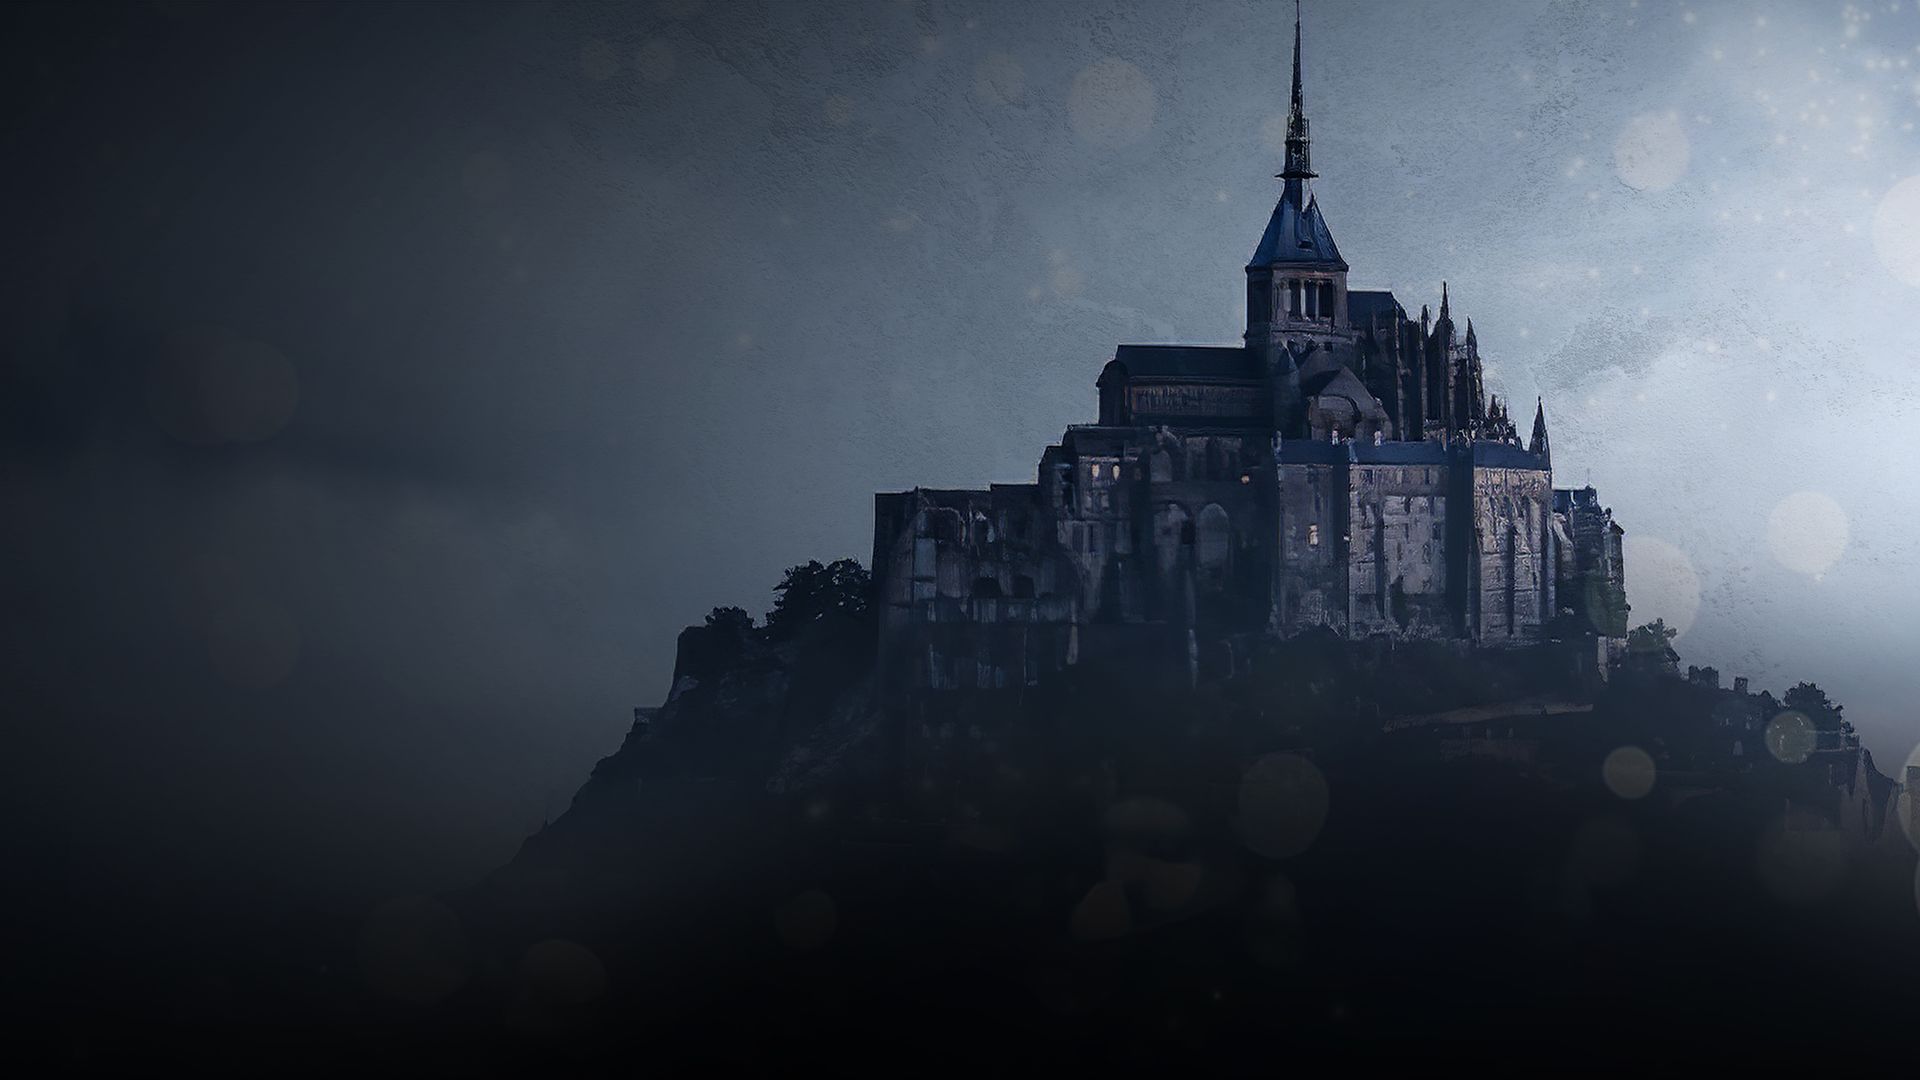 Mont Saint-Michel: Resistance Through the Ages